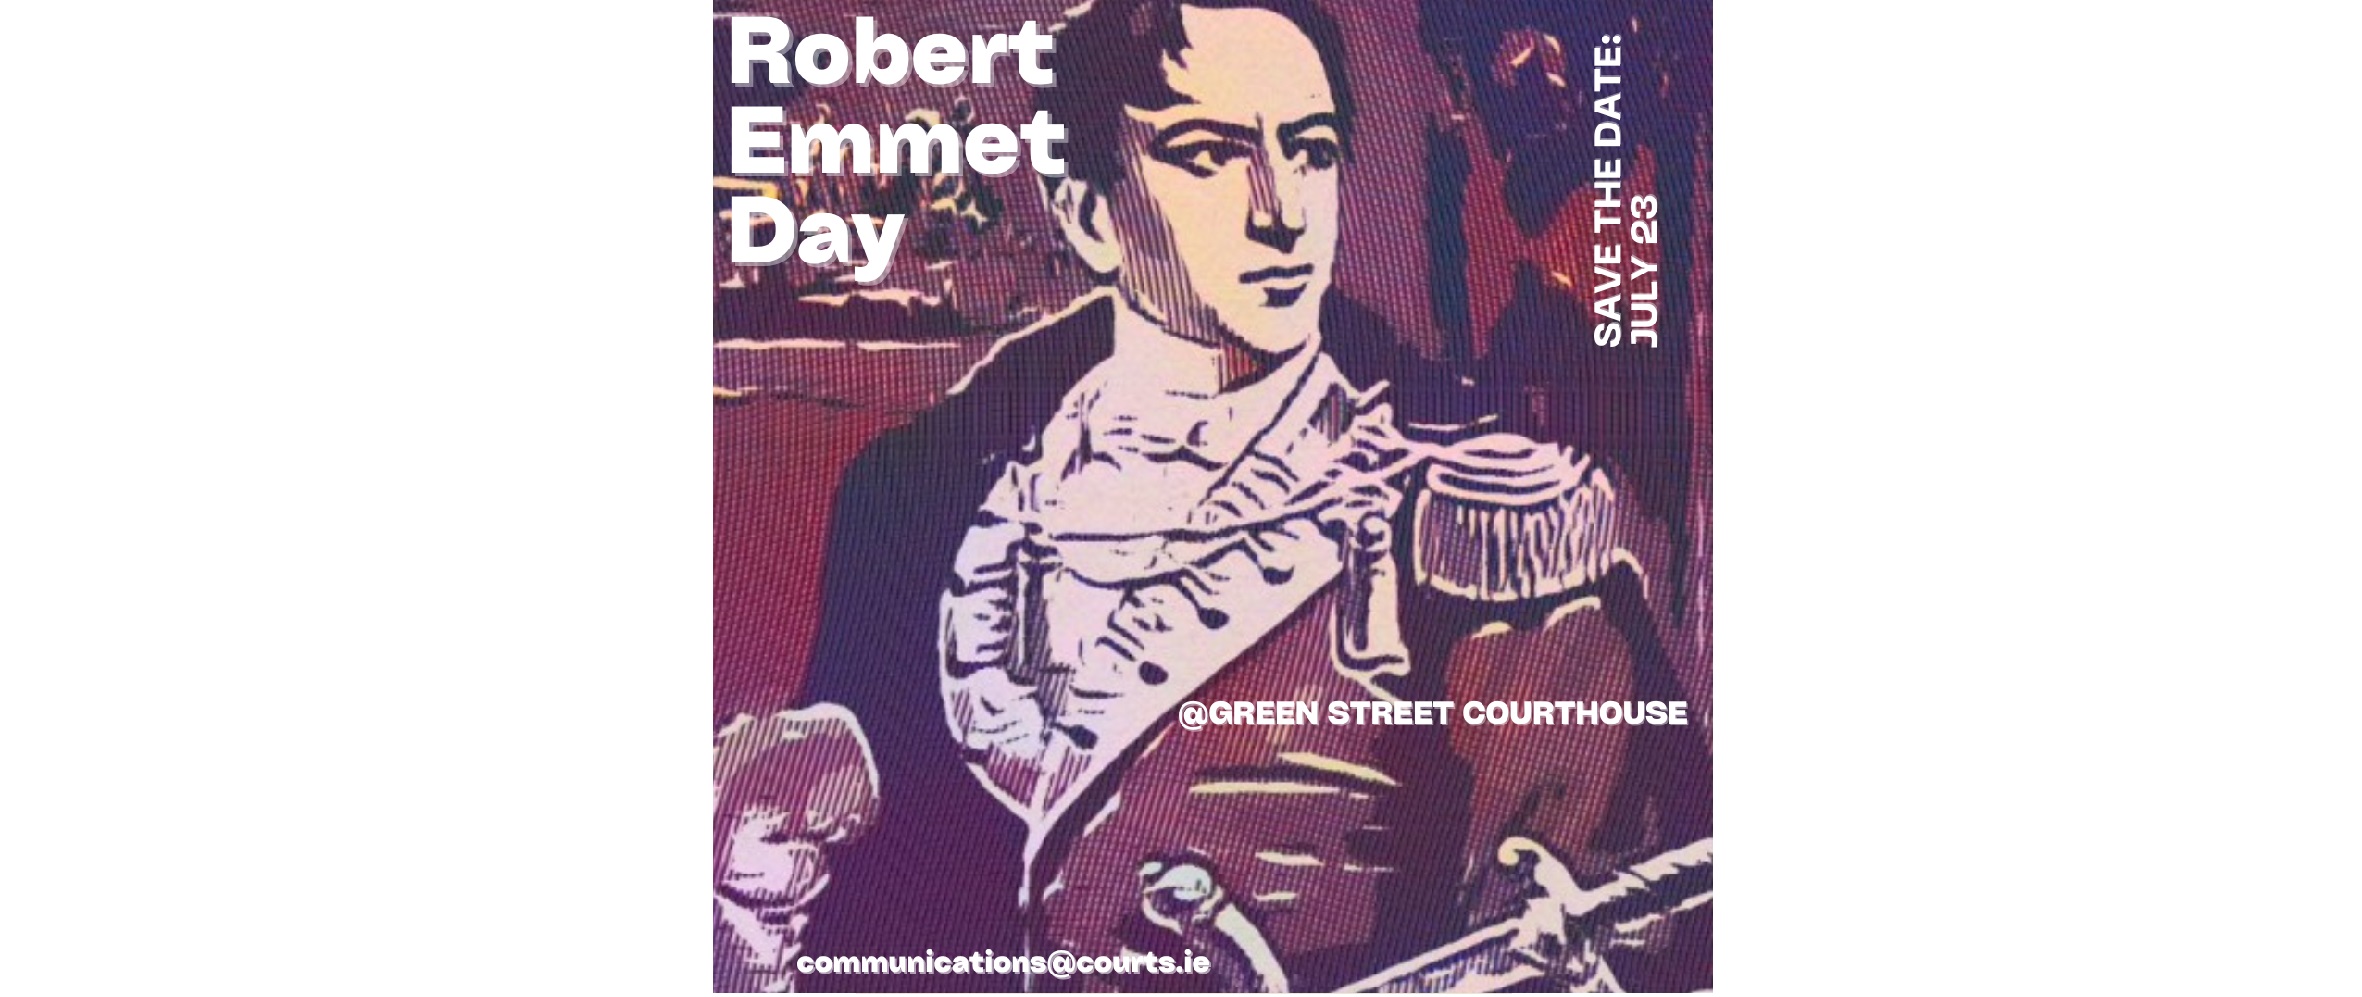 Robert Emmet Day